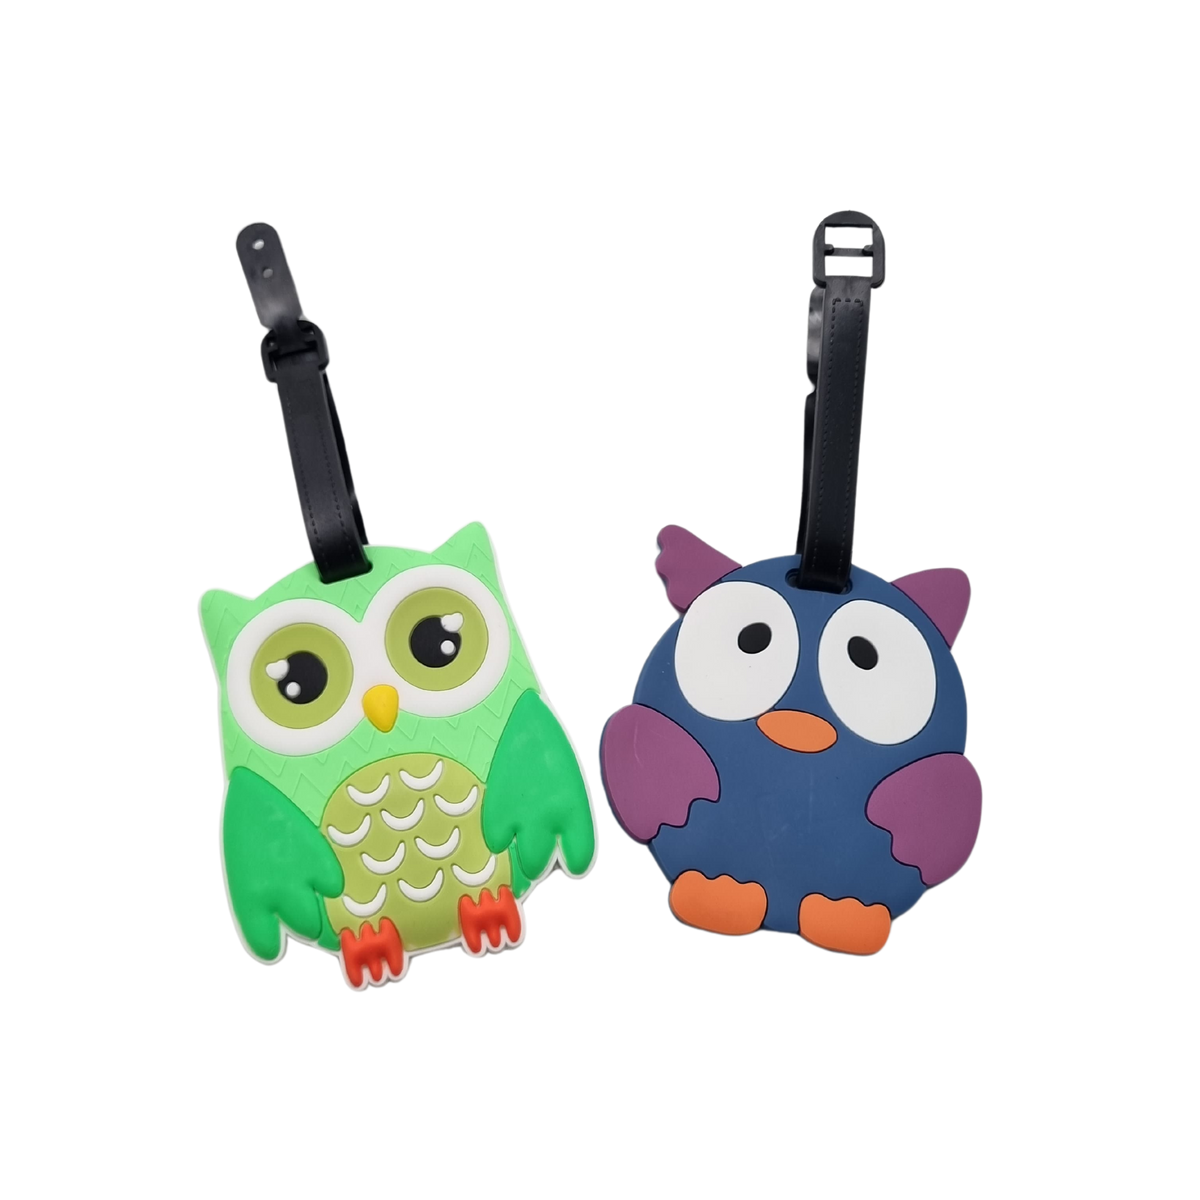 Cute Owl Animal Design Luggage Tag